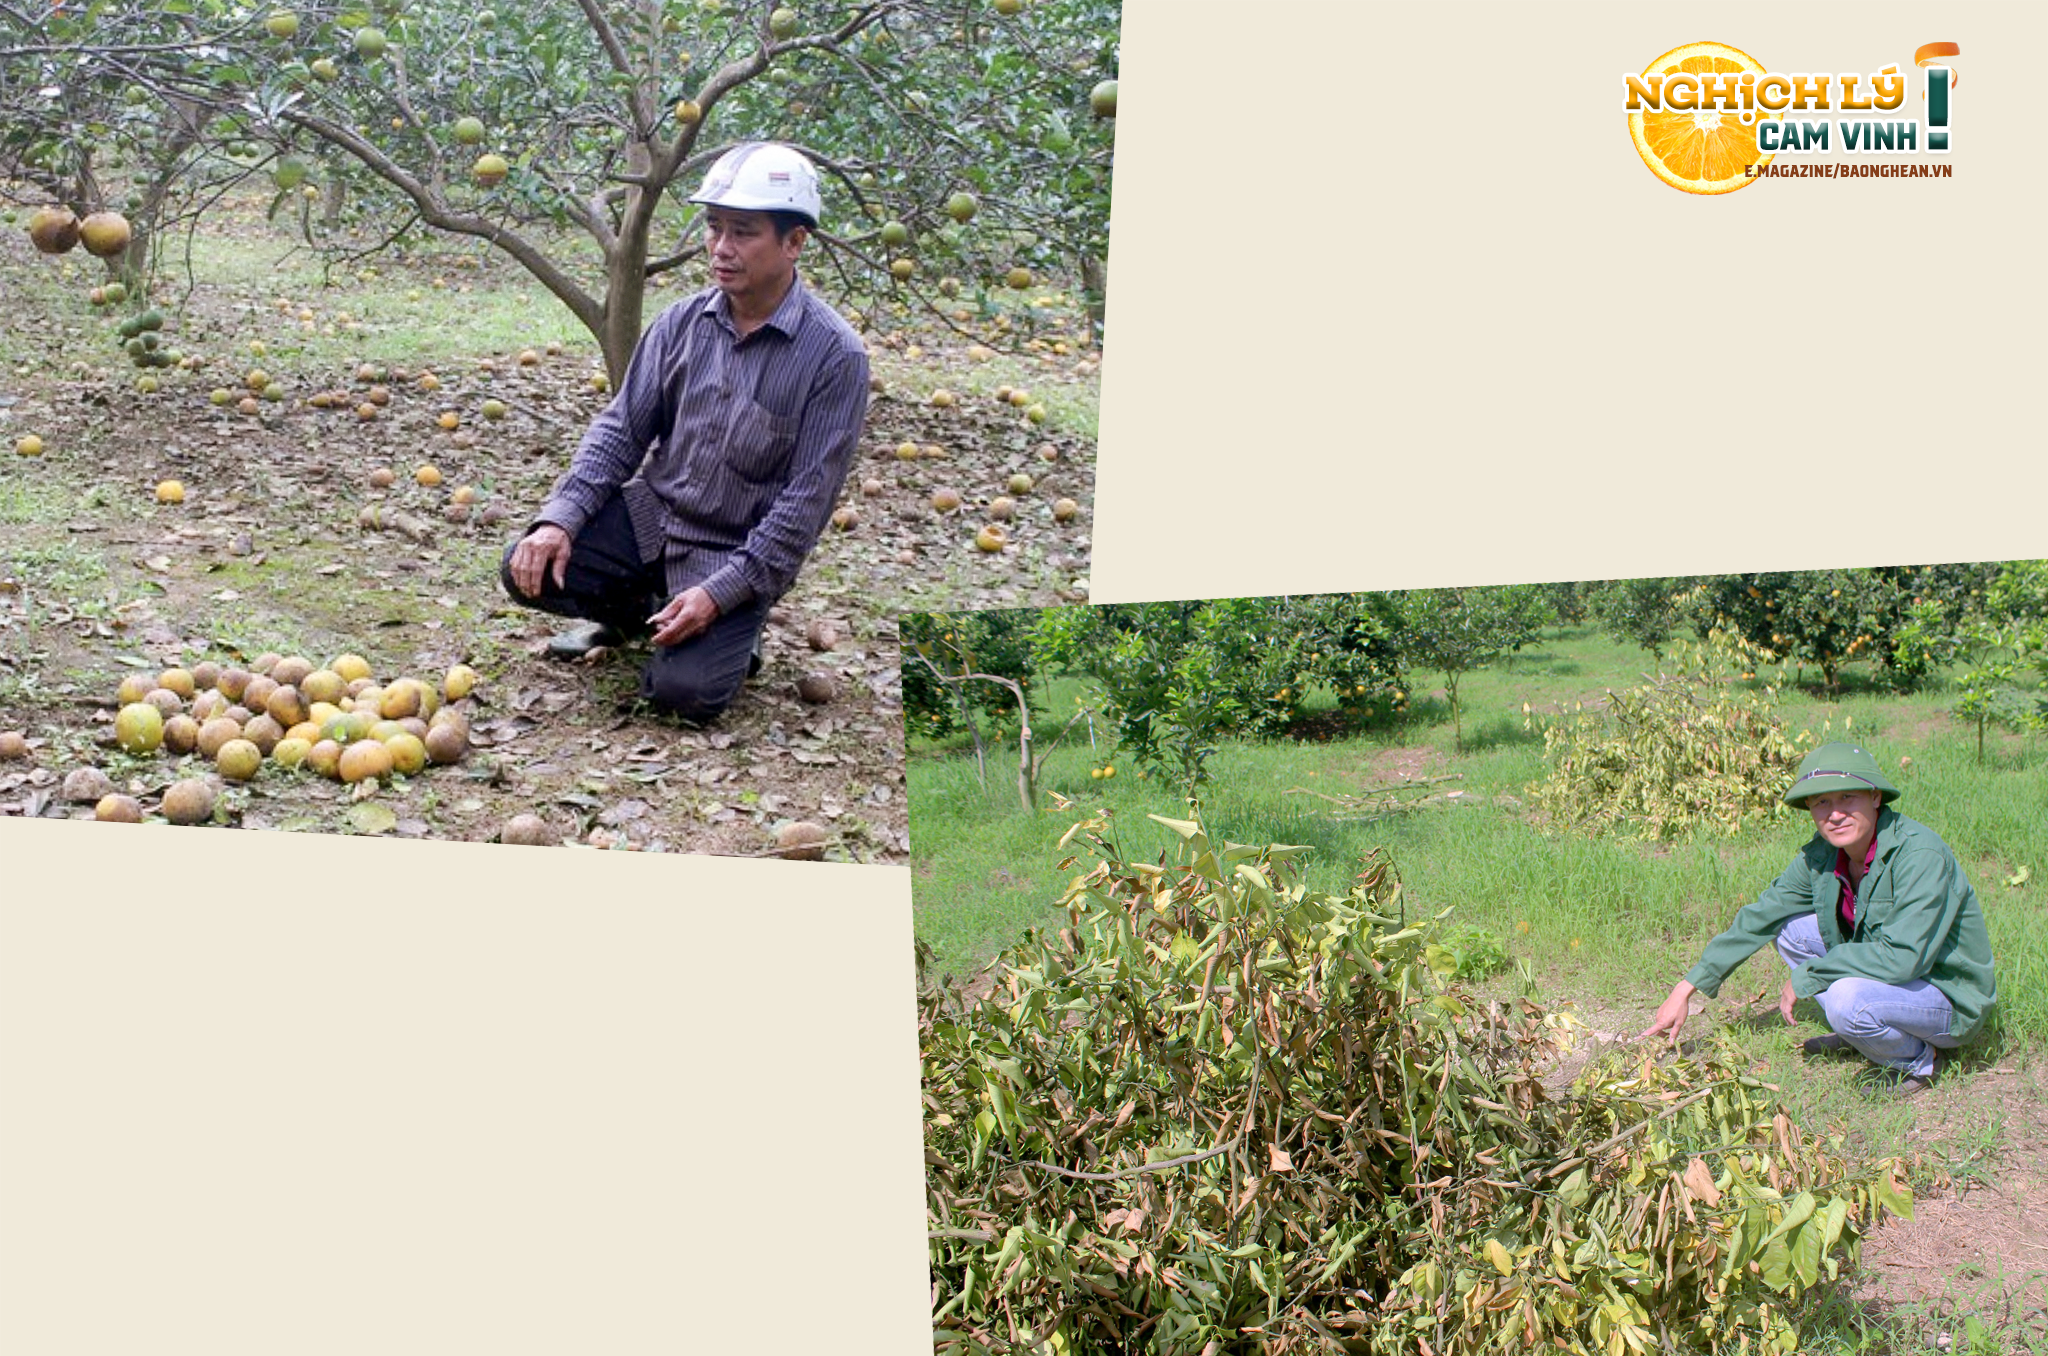 Người dân Quỳ Hợp buộc phải chặt bỏ cây cam vì bị nhiễm bệnh, giảm năng suất; Nhiều chủ vườn cam ở huyện Con Cuông mất trắng, thiệt hại lớn. Ảnh: Quang An - Bảo Hân